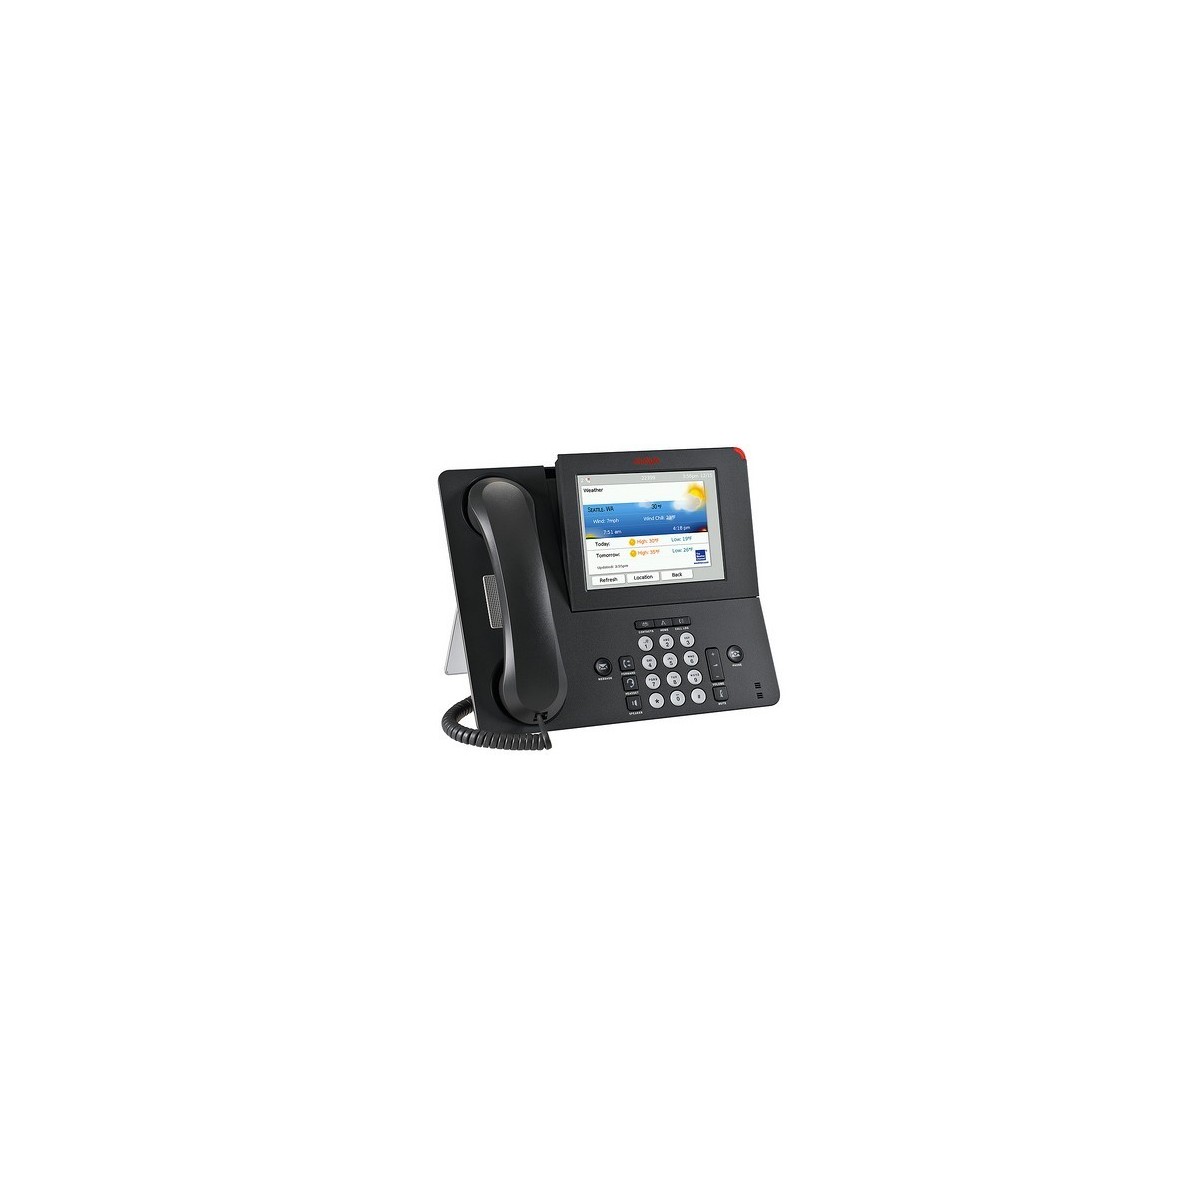 Avaya 9670G IP Deskphone - IP Phone - Charcoal - Wired handset - 2 lines - Digital - LCD